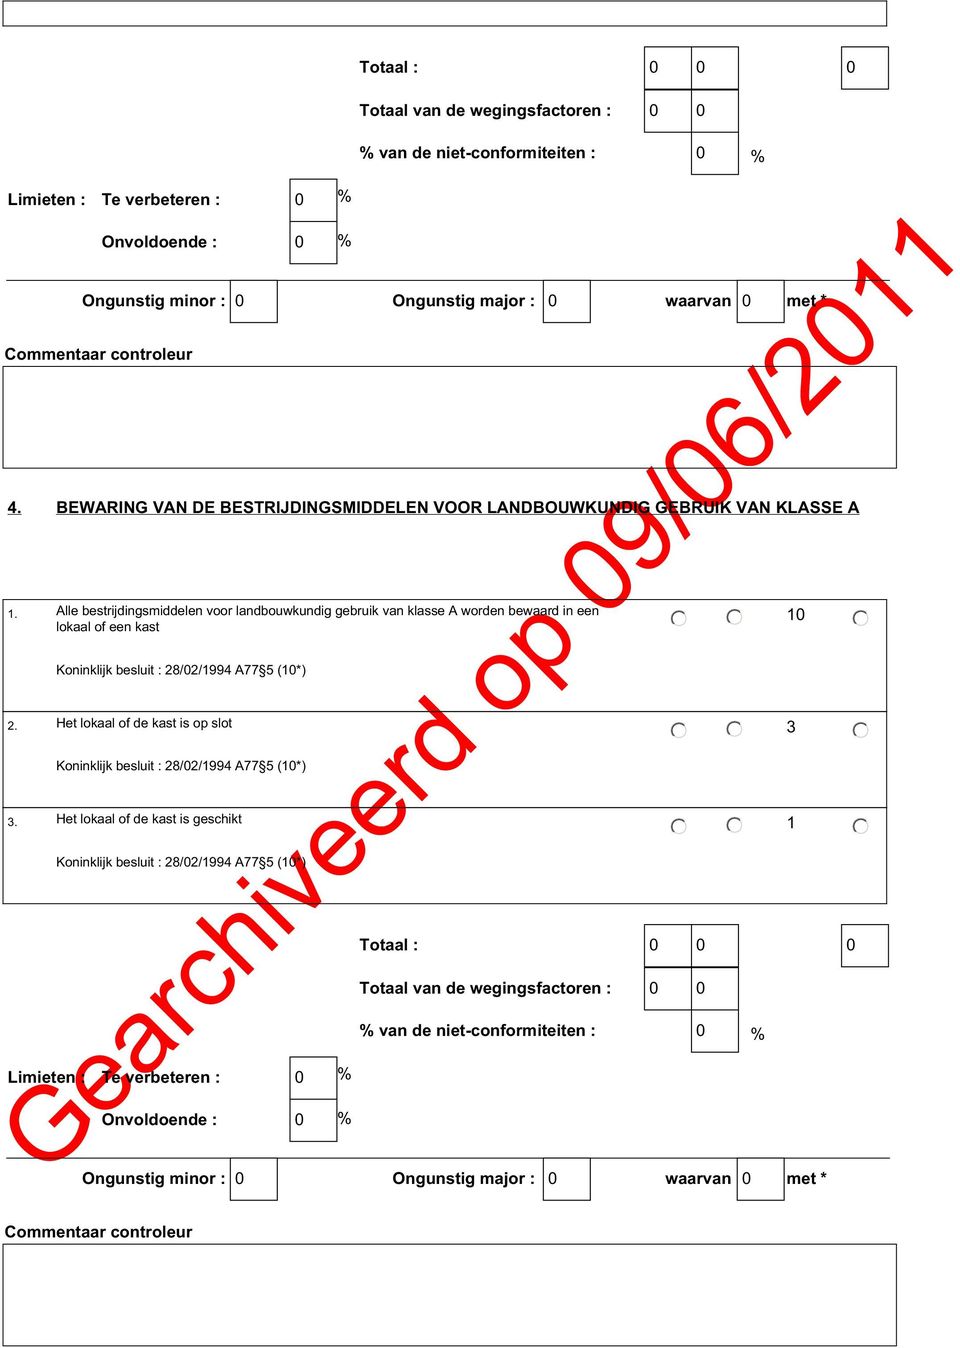 Alle bestrijdingsmiddelen voor landbouwkundig gebruik van klasse A worden bewaard in een lokaal of een kast Koninklijk besluit : 28/2/994 A77 5 (*) 2.